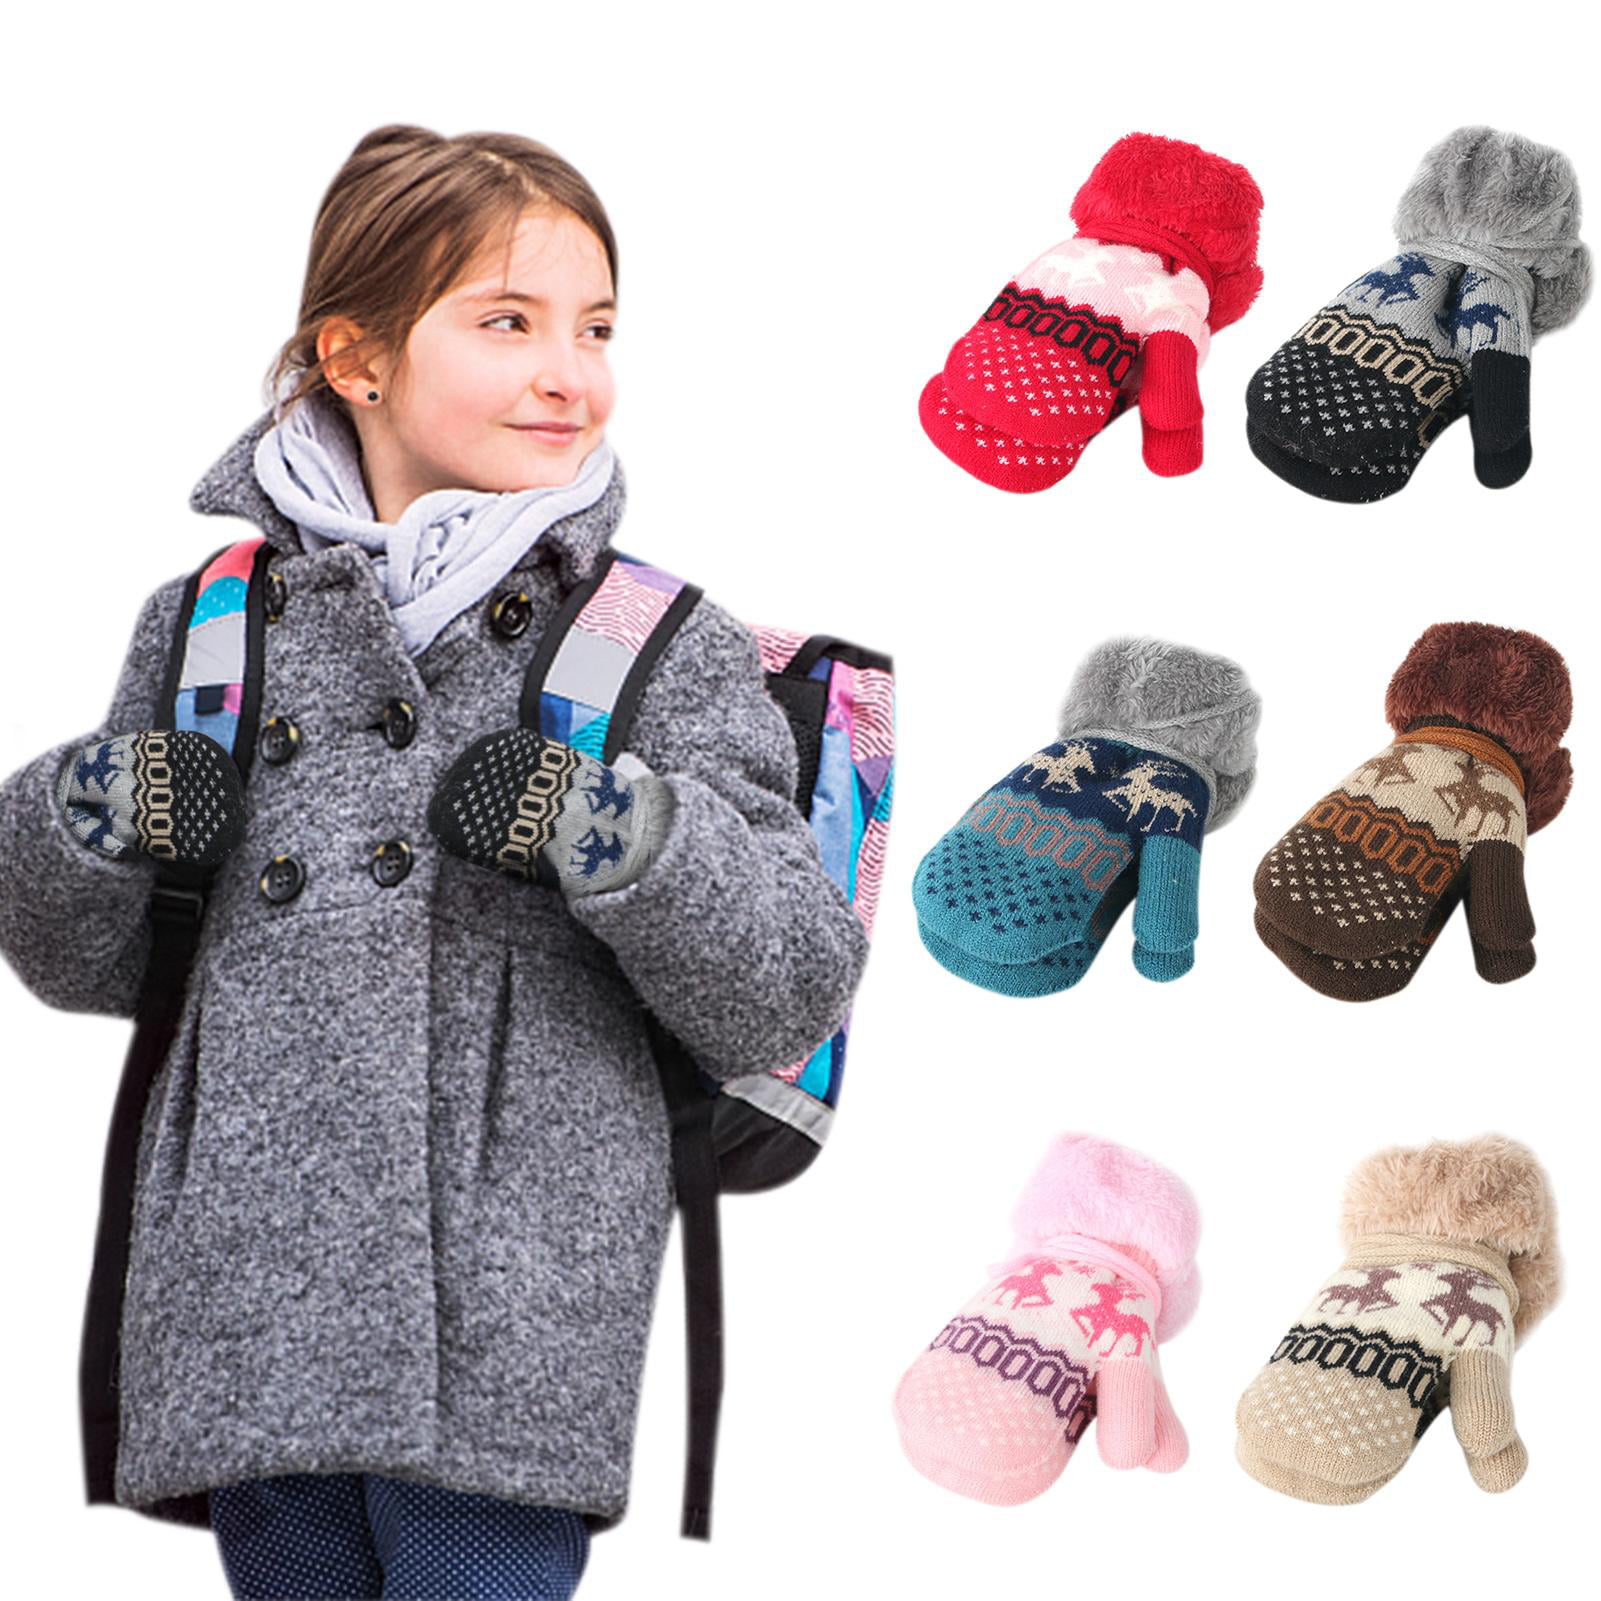 Girls Children Kids Autumn Winter Warm Mittens Gloves With String Size 2-5 Years 